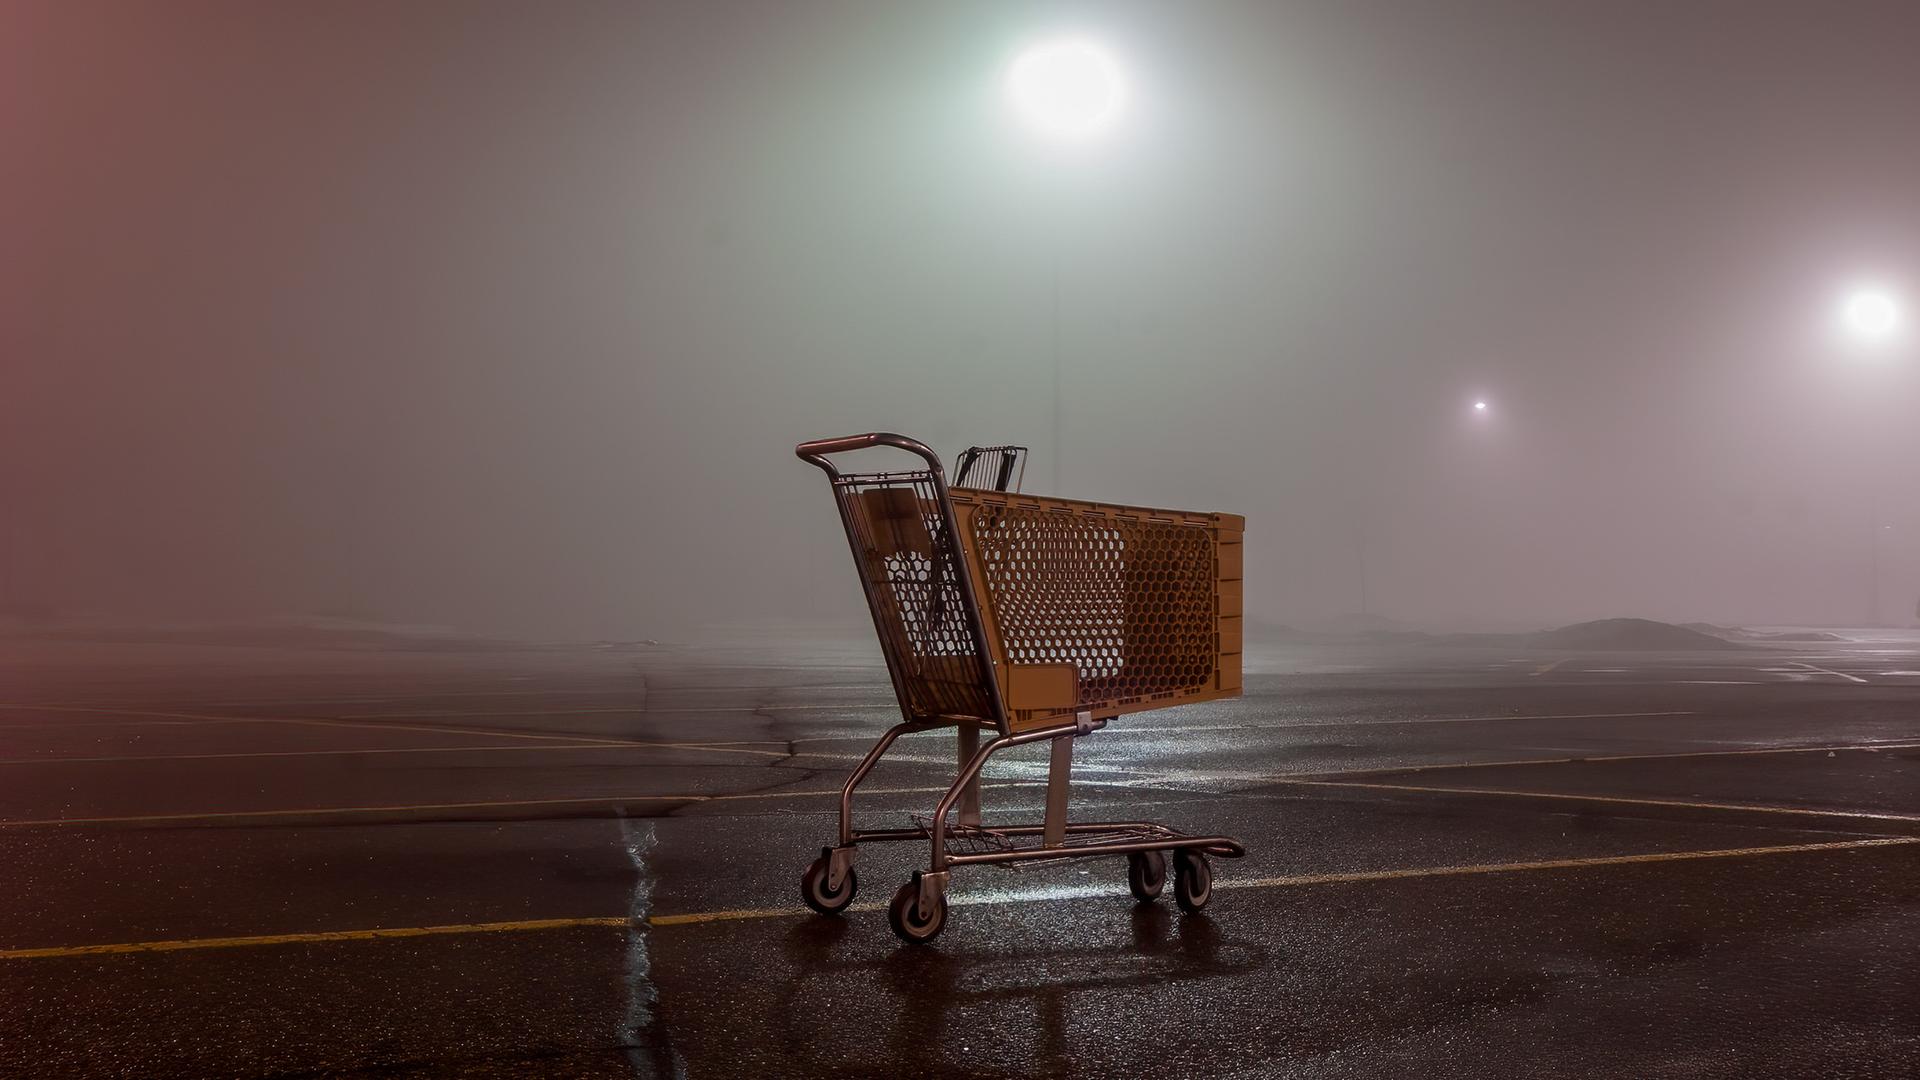 Ein leerer Einkaufswagen auf einem Parkplatz in der Dunkelheit.